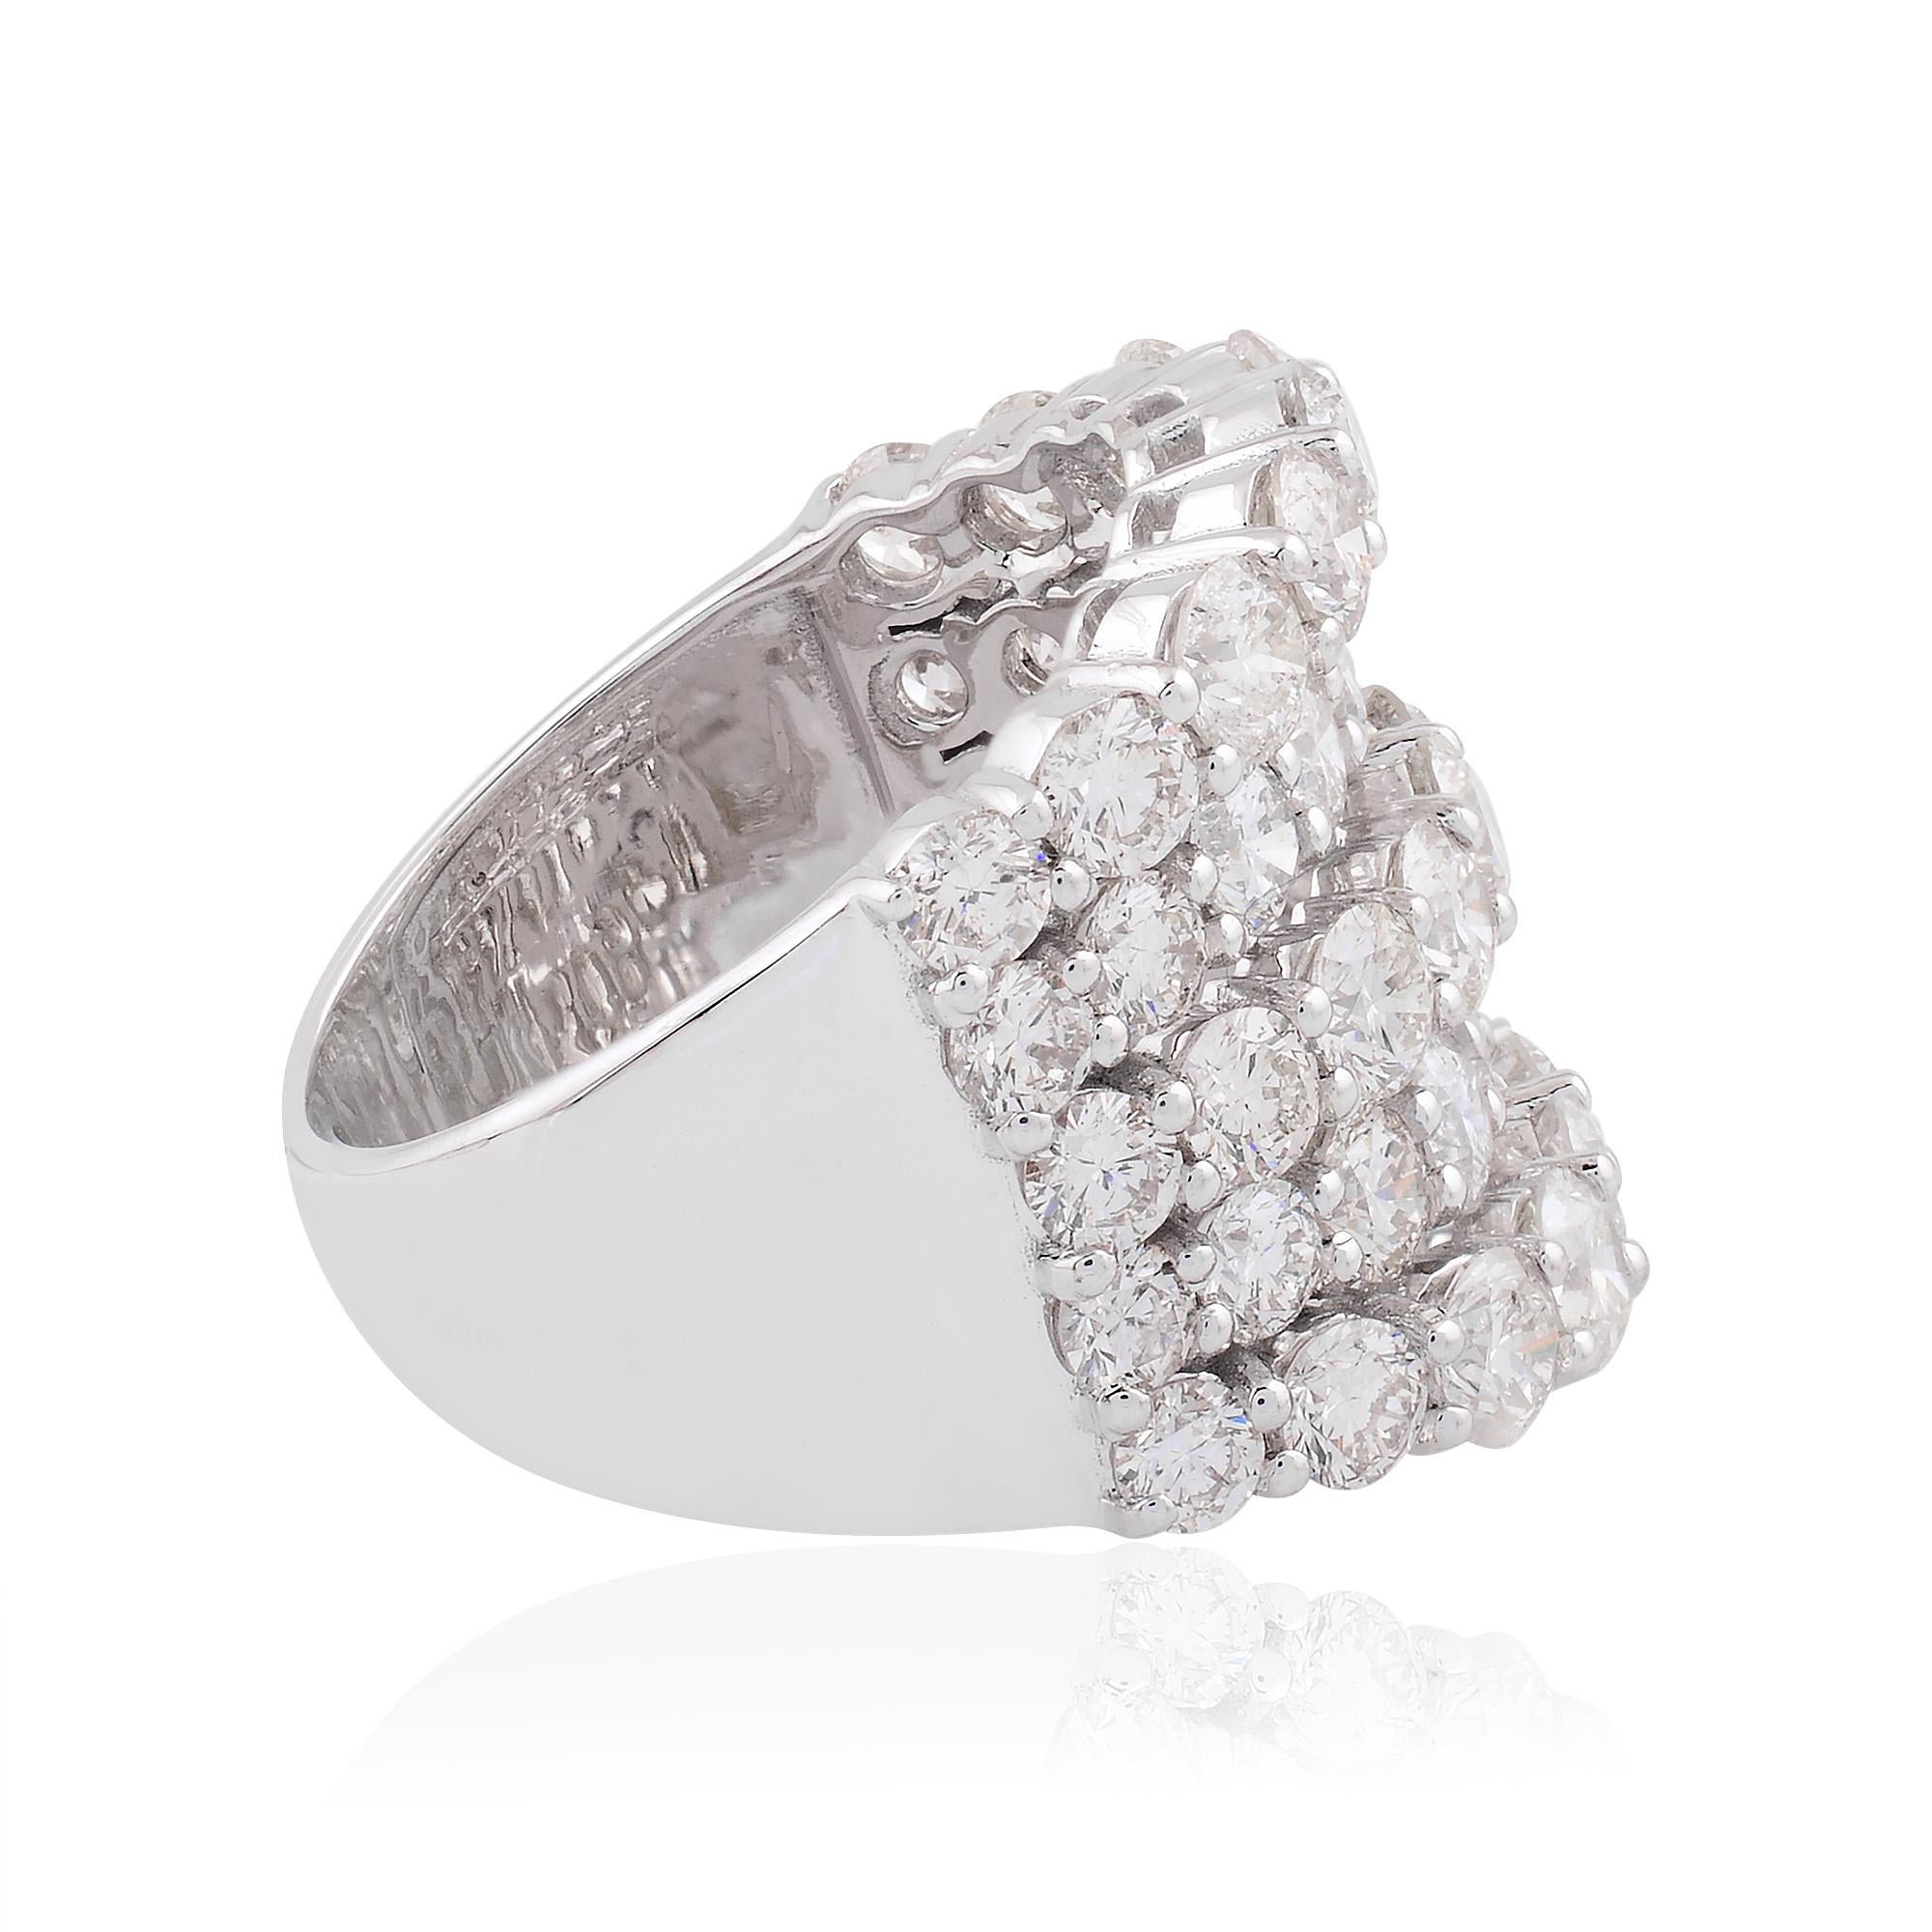 Artikel-Code:- SER-2134C (14k)
Bruttogewicht :- 7.81 gm
14k Solid White Gold Gewicht :- 6,65 gm
Gewicht des natürlichen Diamanten :-5,75 ct. ( DURCHSCHNITTLICHE DIAMANT-REINHEIT SI1-SI2 & FARBE H-I )
Ring Größe: US 7 & Alle Ringgröße verfügbar

✦